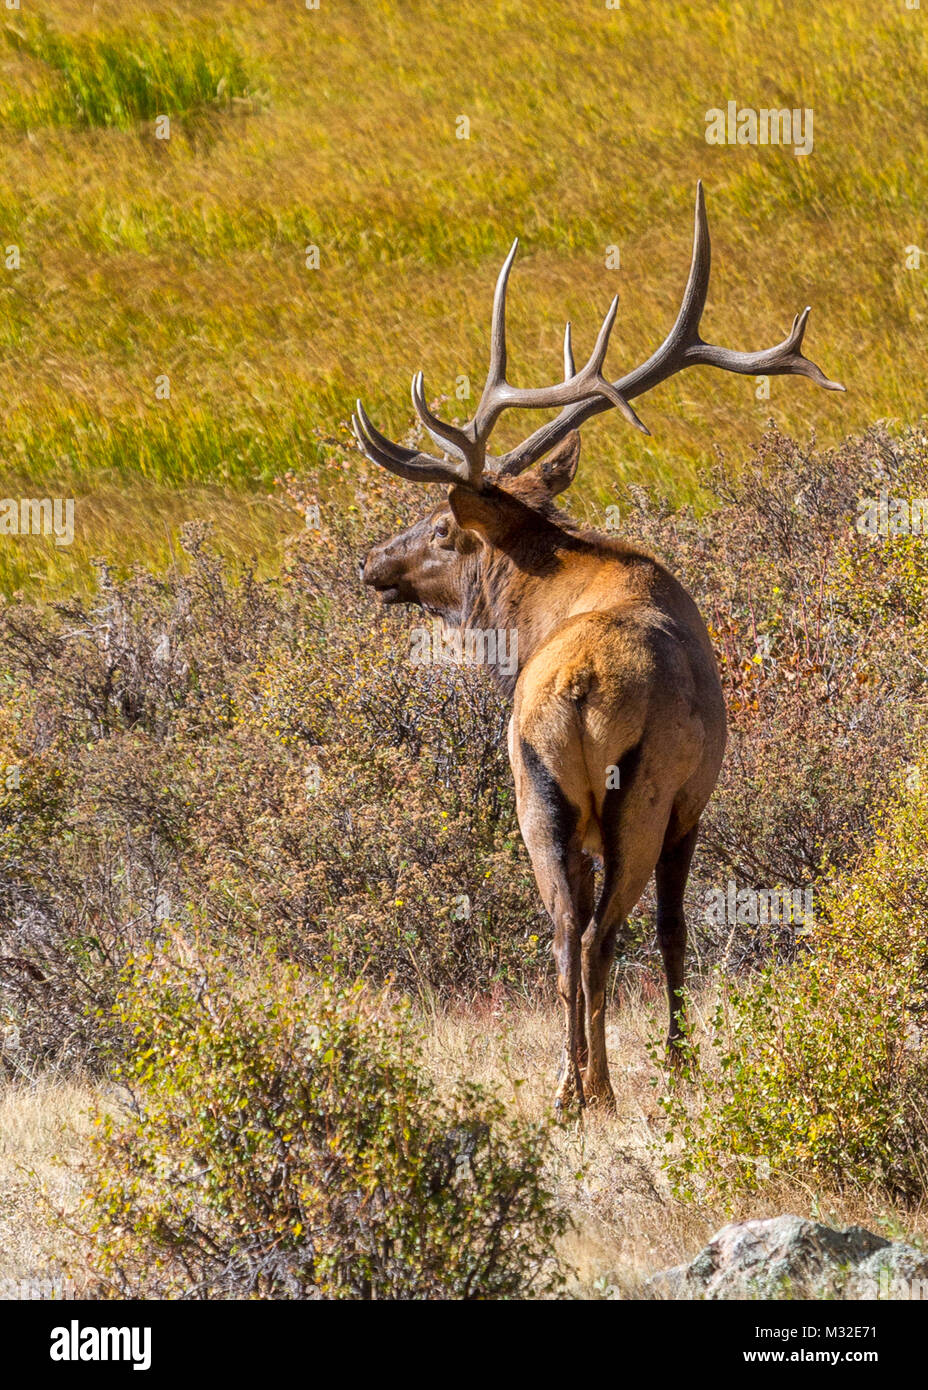 Macho de Elk Americana (Cervus canadensis) están en constante alerta durante la temporada de cría de otros varones y luchará para proteger a sus mujeres. Foto de stock